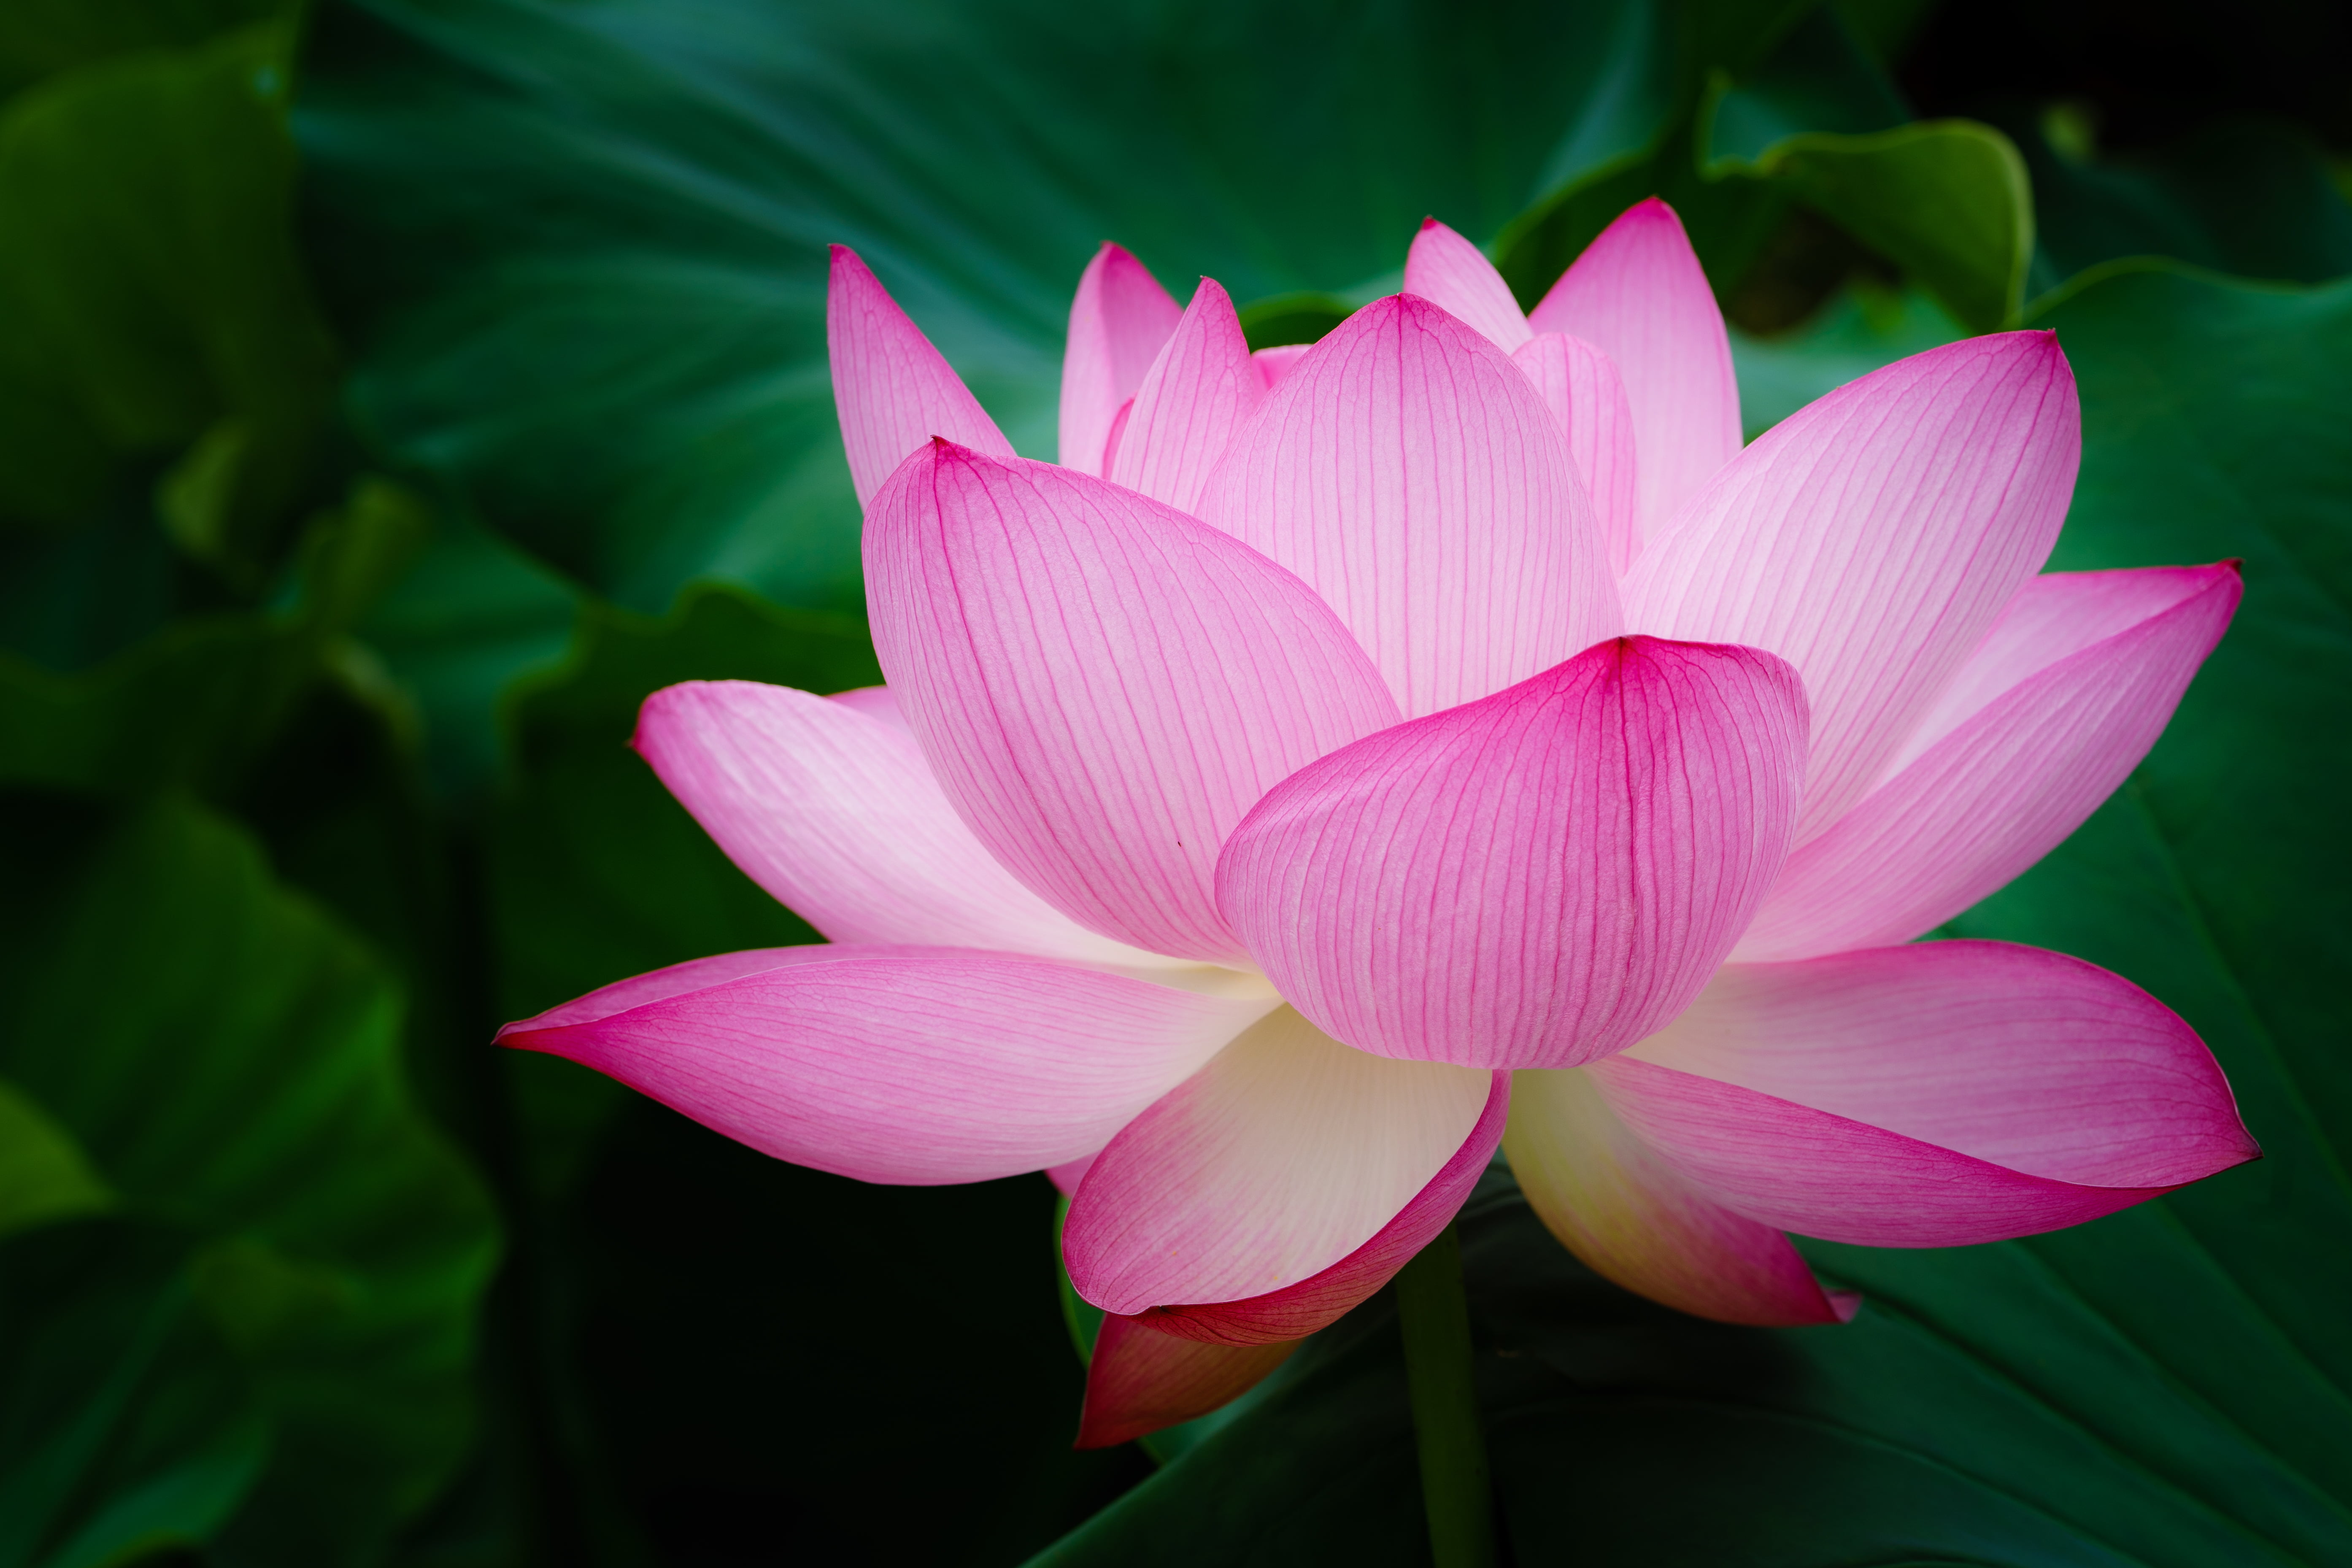 selective focus photography of pink petaled flowers in full bloom, lotus flower, lotus flower